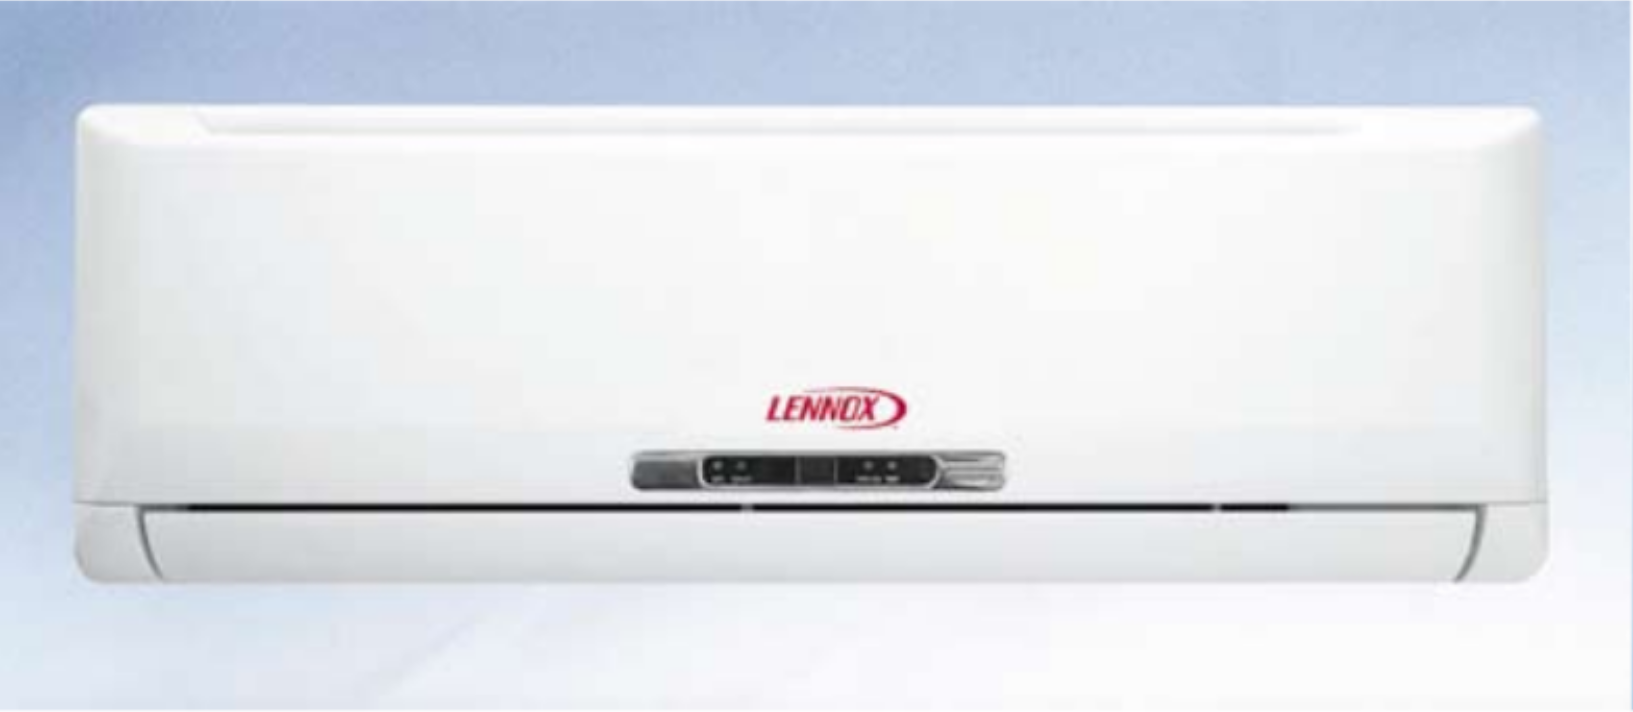 DC Inverter to nowa linia klimatyzatorów LENNOX znacznie redukujących koszty eksploatacji.